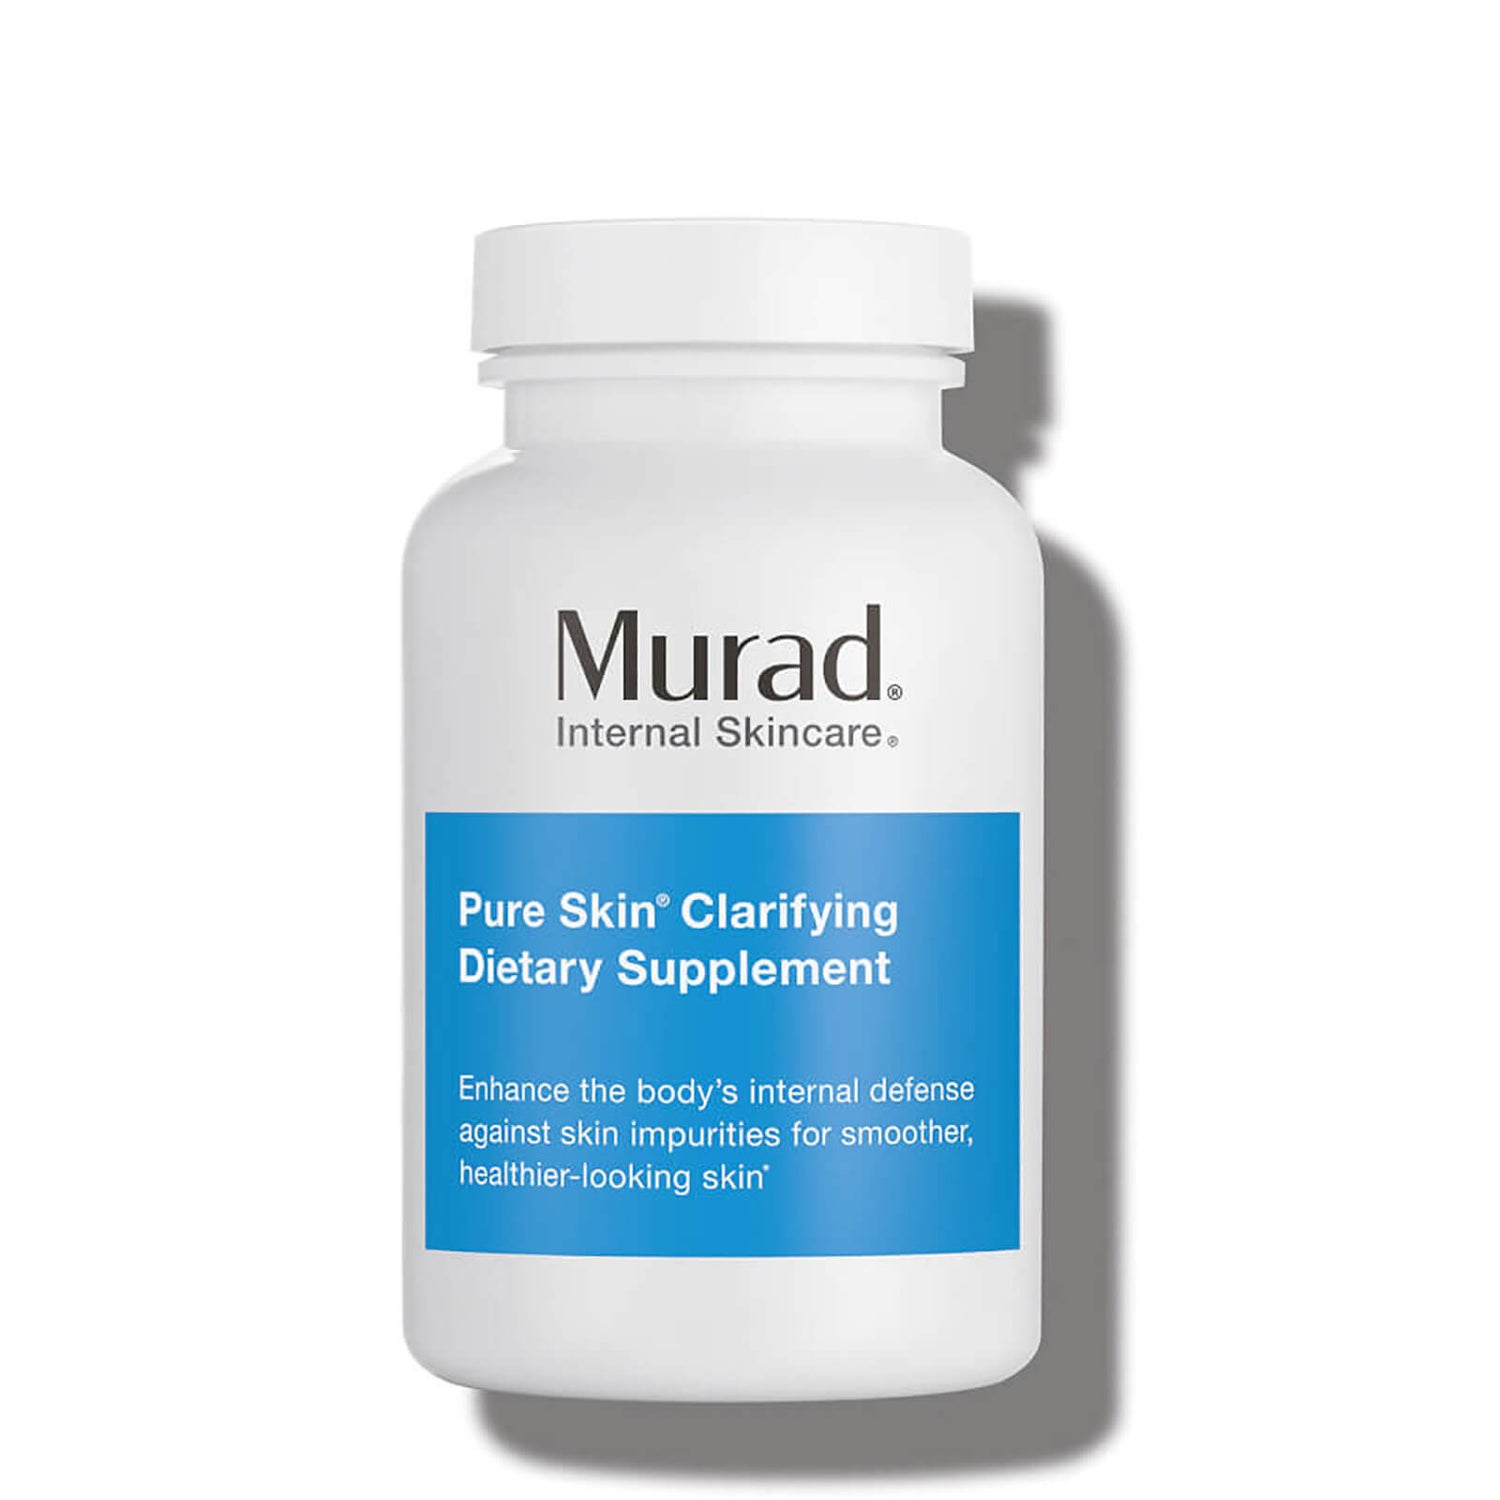 Murad Pure Skin Clarifying Dietary Supplement (120 count)